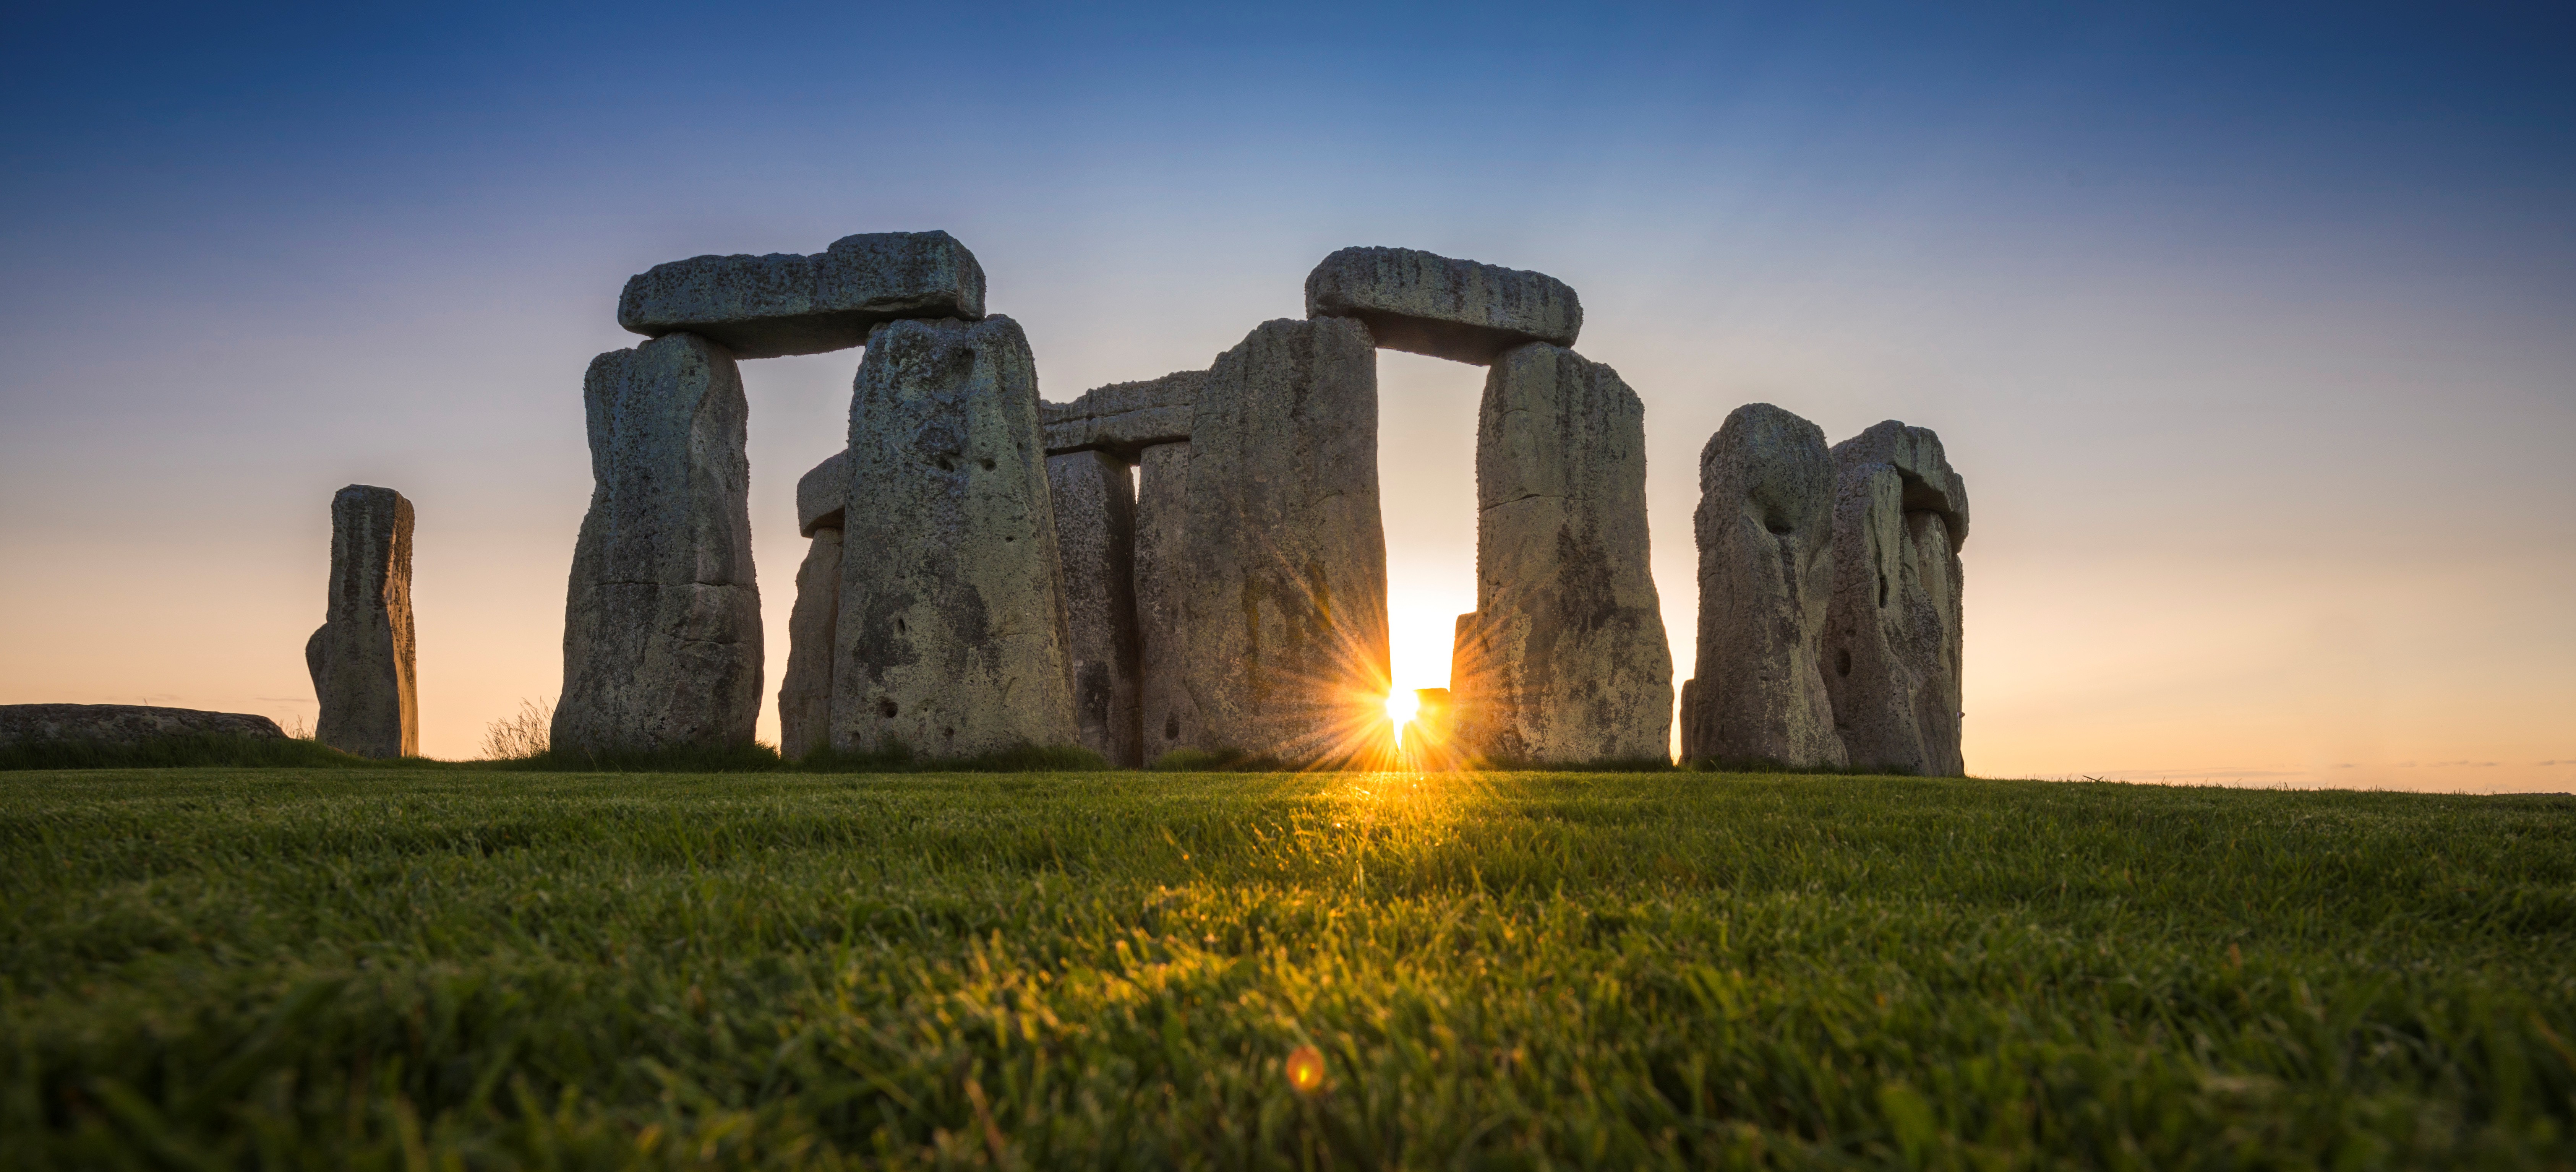 Justiça do Reino Unido ordena interromper a construção de túnel perto do monumento de Stonehenge thumbnail